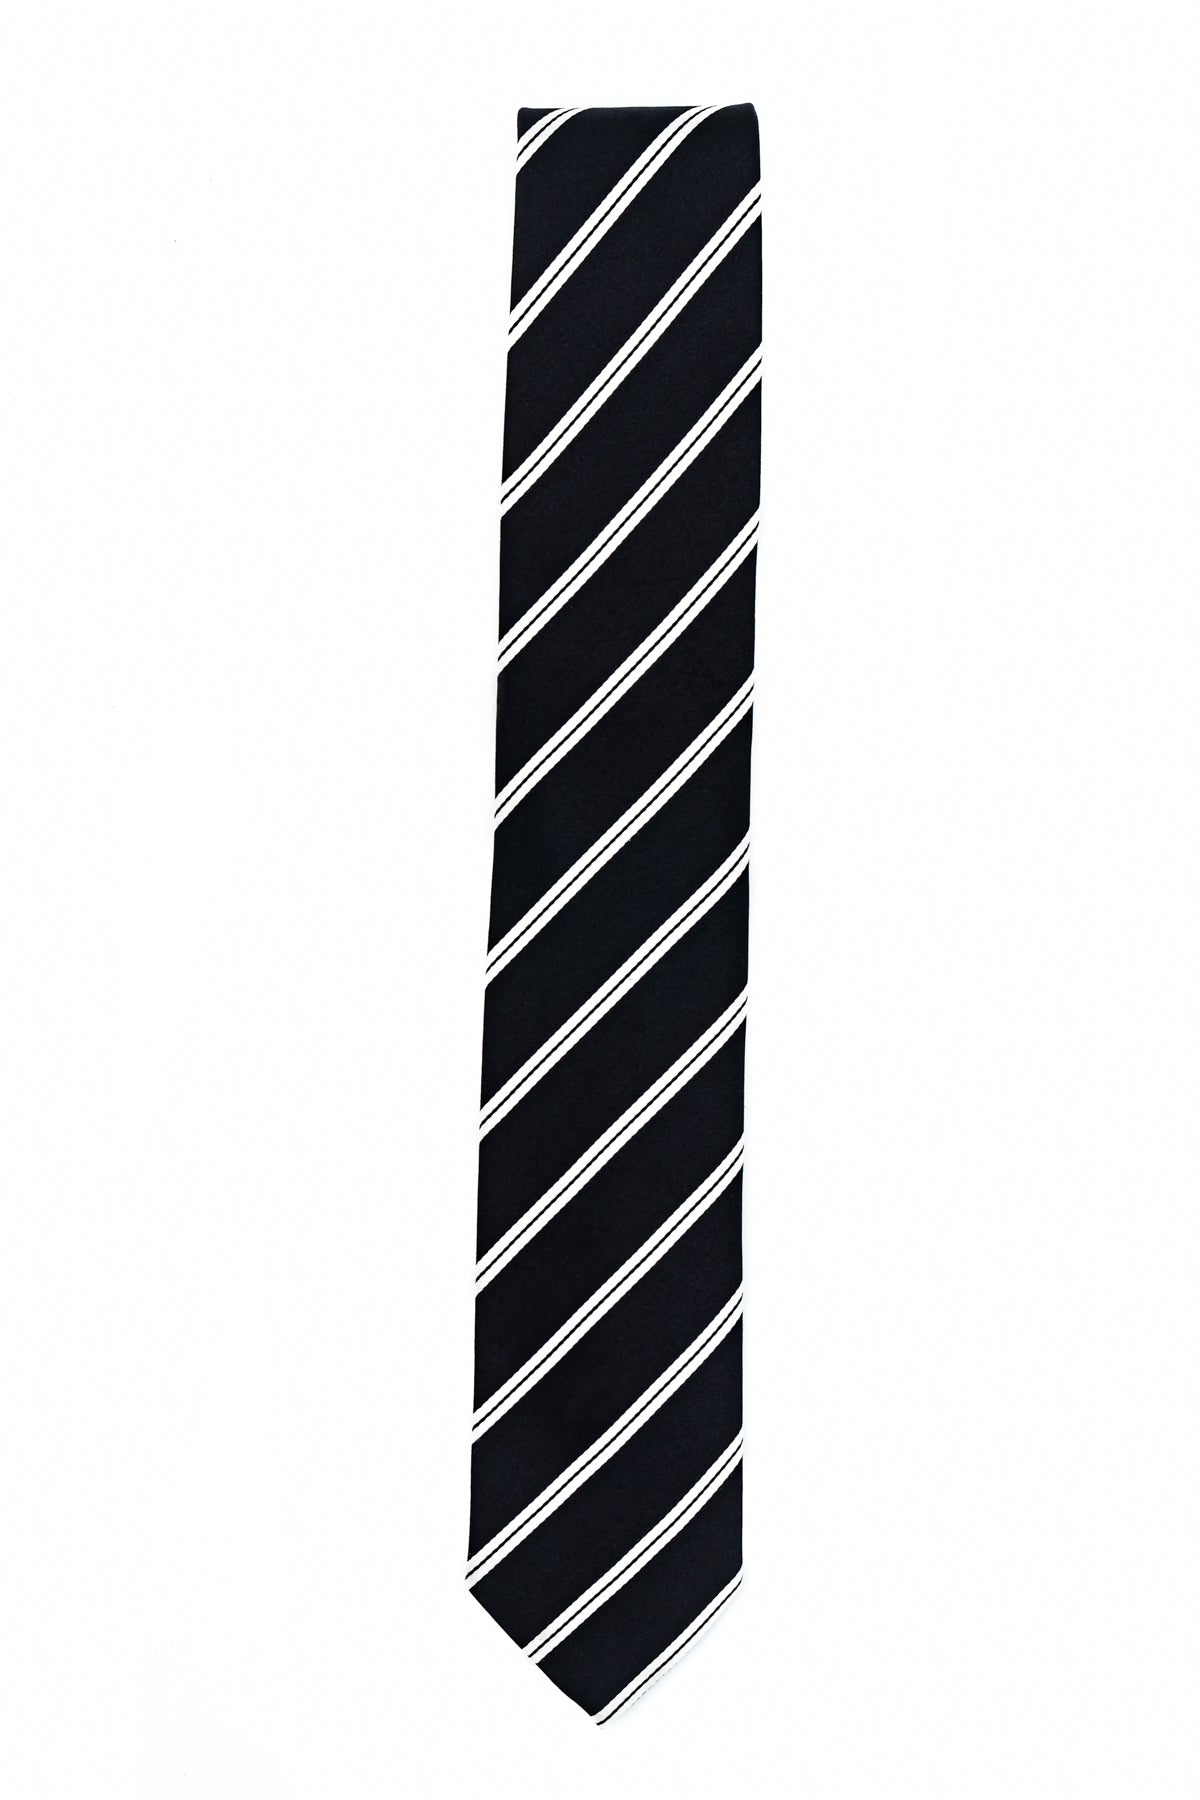 Franco Bassi Striped Satin Tie Black/white Man-1